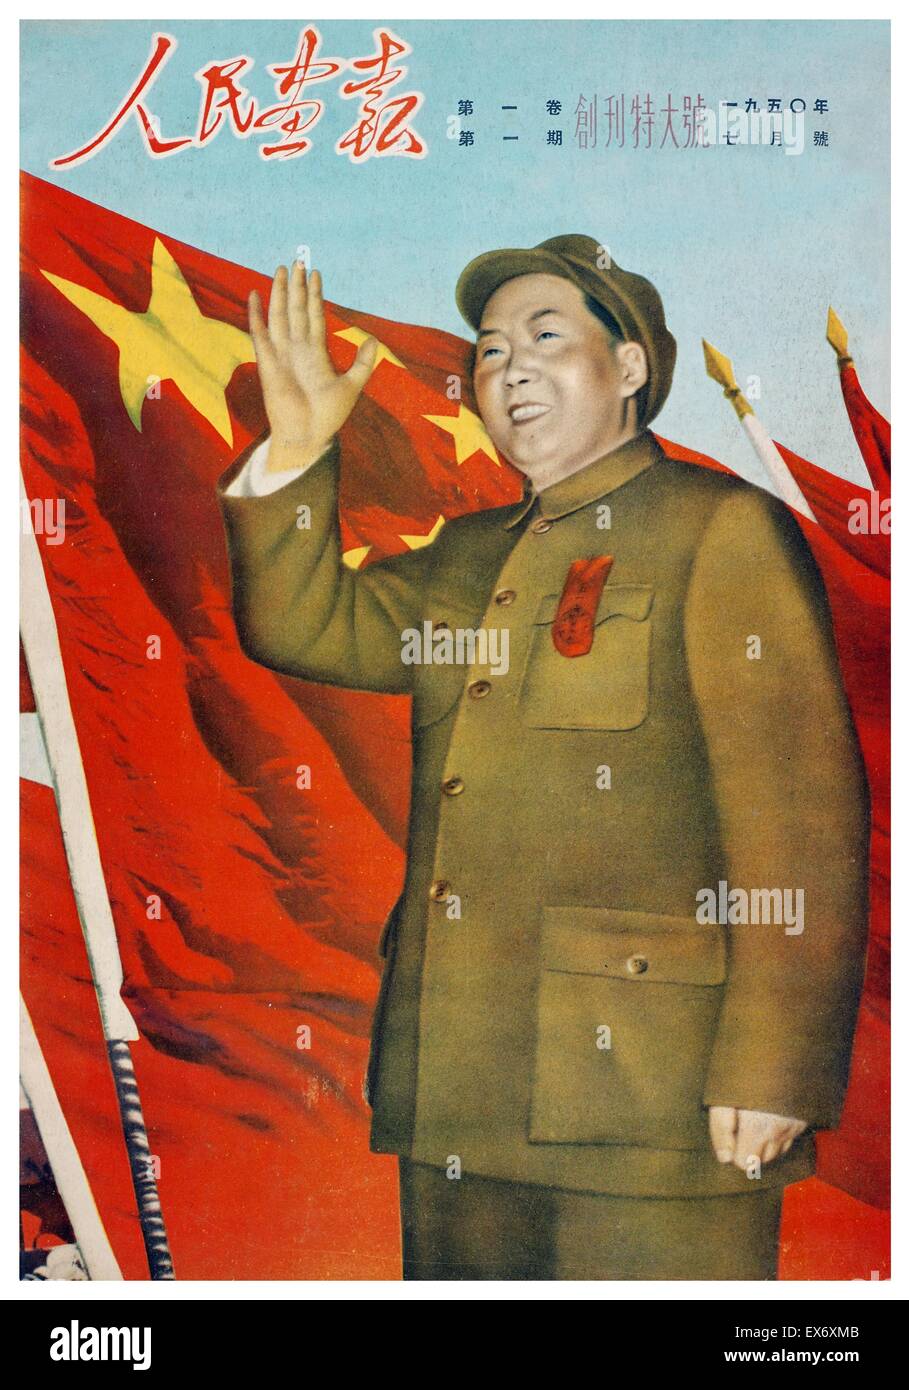 Mao Ze Dung chinesische kommunistische Parteiführer auf einem Magazin-Cover des Jahres 1966 Stockfoto